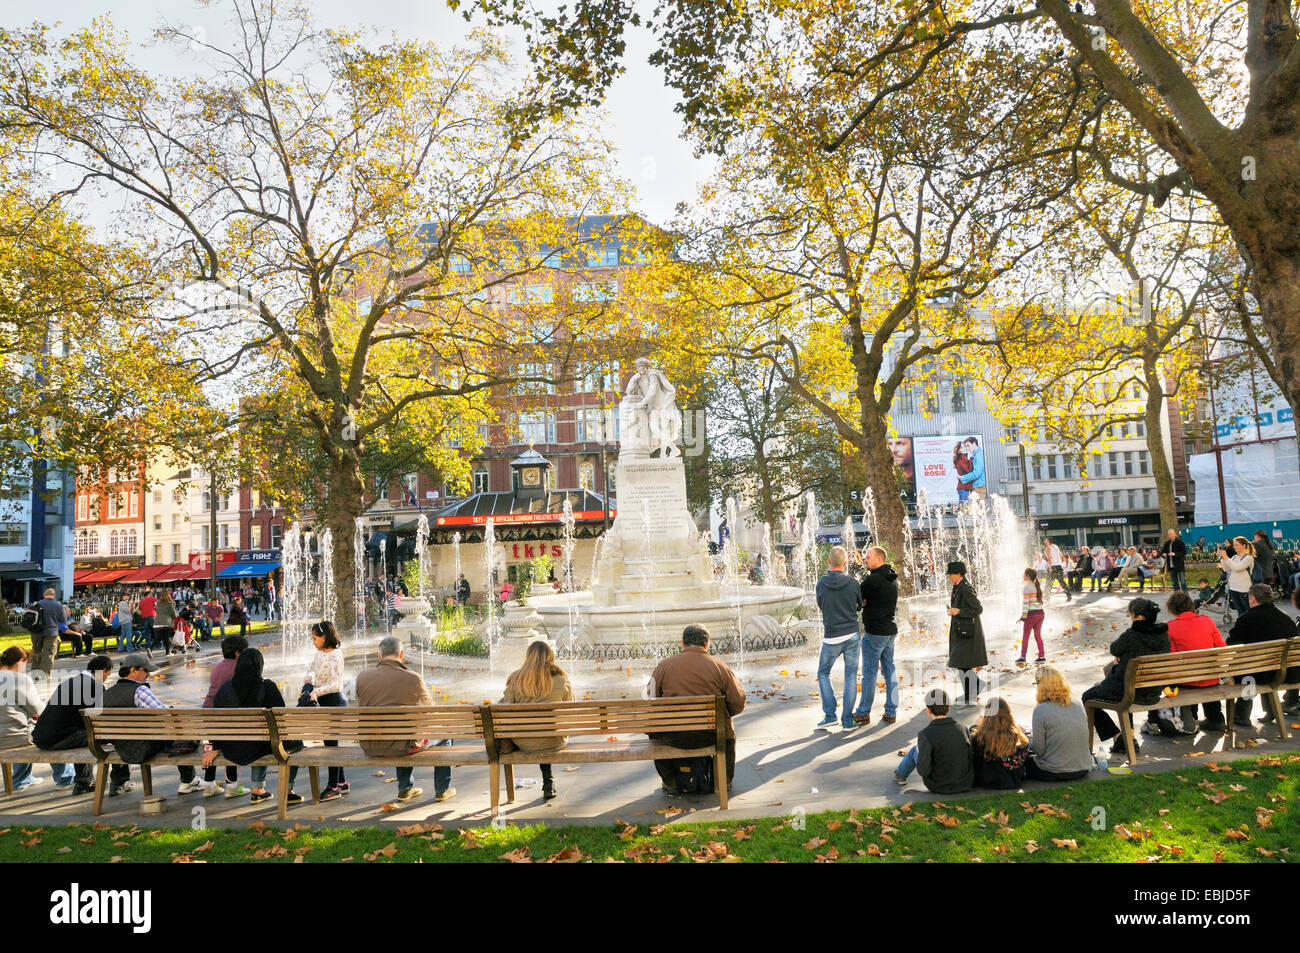 Leicester Square in London.  Menschen rund um die Statue von William Shakespeare und Brunnen in Leicester Square Gardens entspannen. Stockfoto